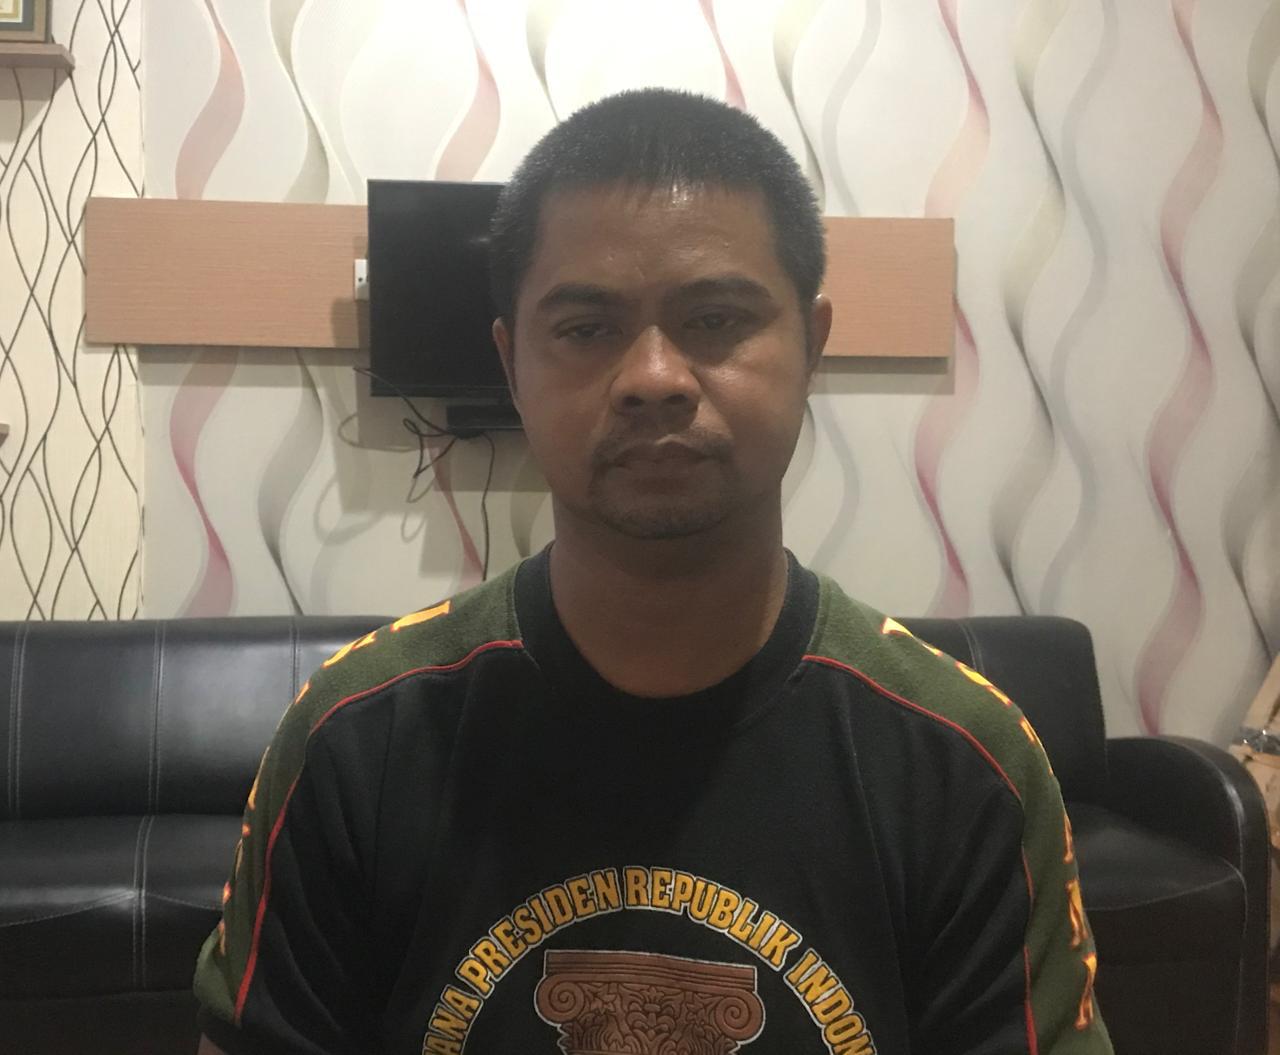 Anggota BIN Gadungan di Pekanbaru Ditangkap Polisi